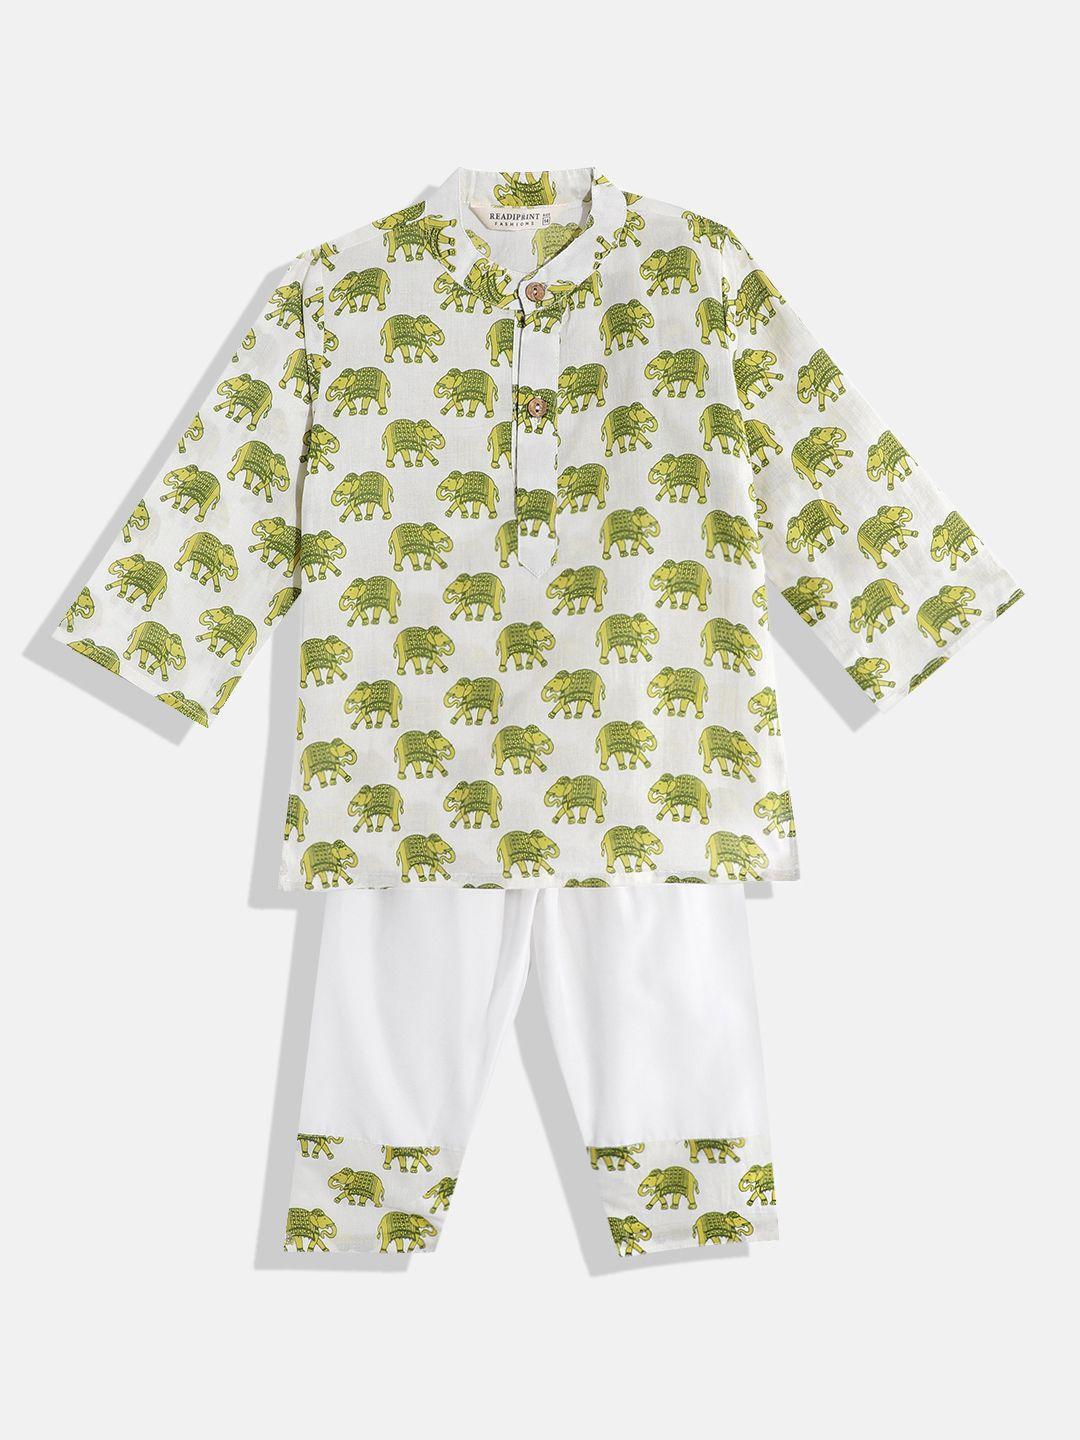 readiprint fashions boys printed pure cotton kurta with pyjamas